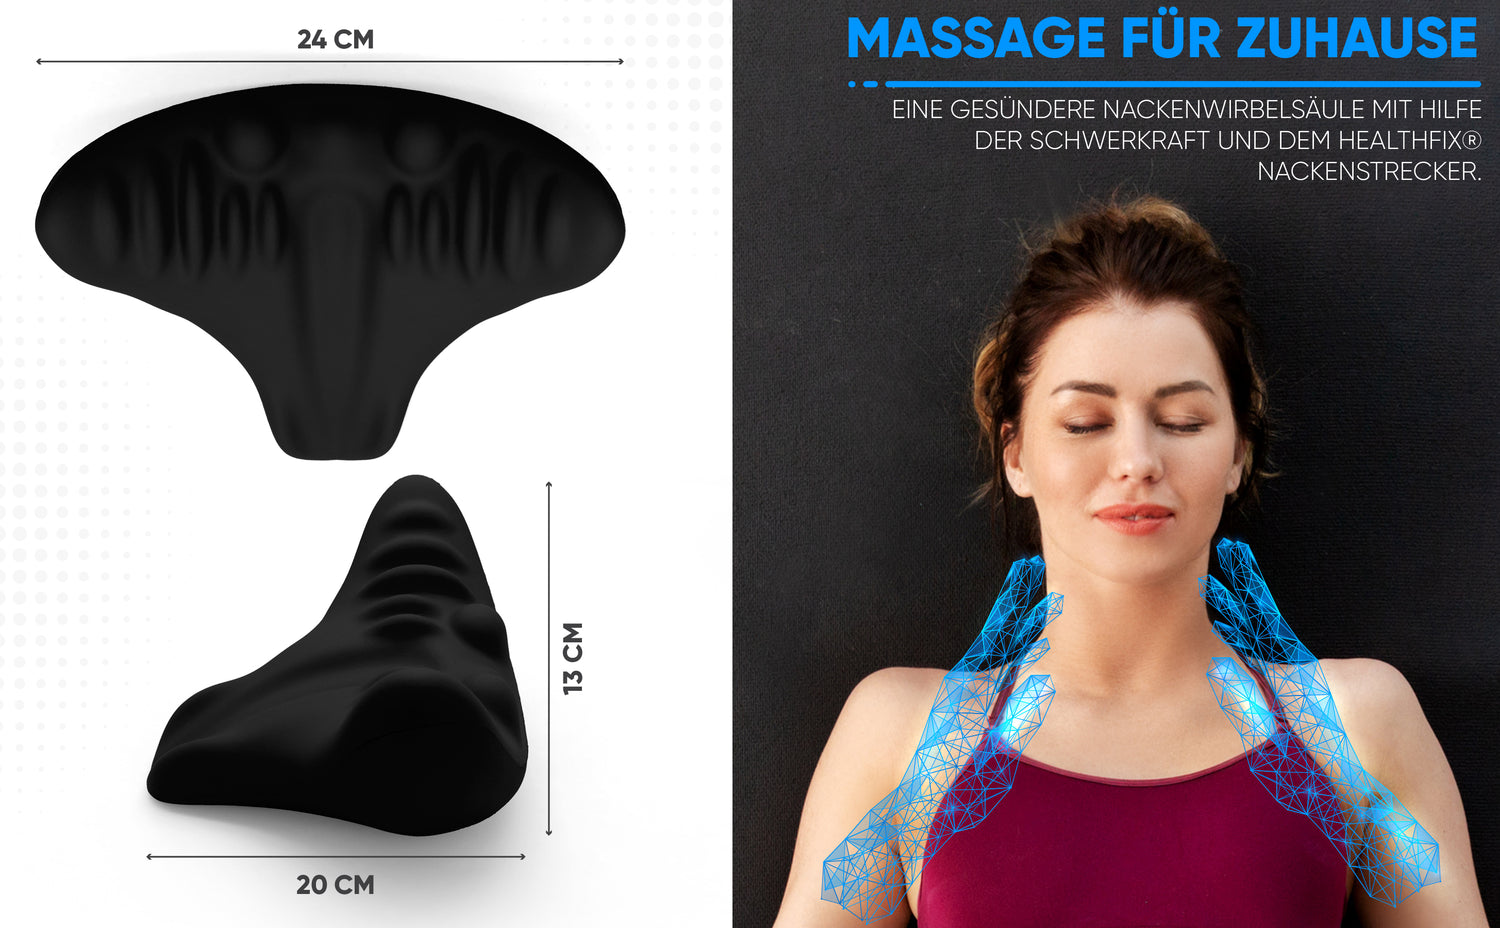 massage für zuhause nackenstrecker. Nackenmassage. Nacken entspannen